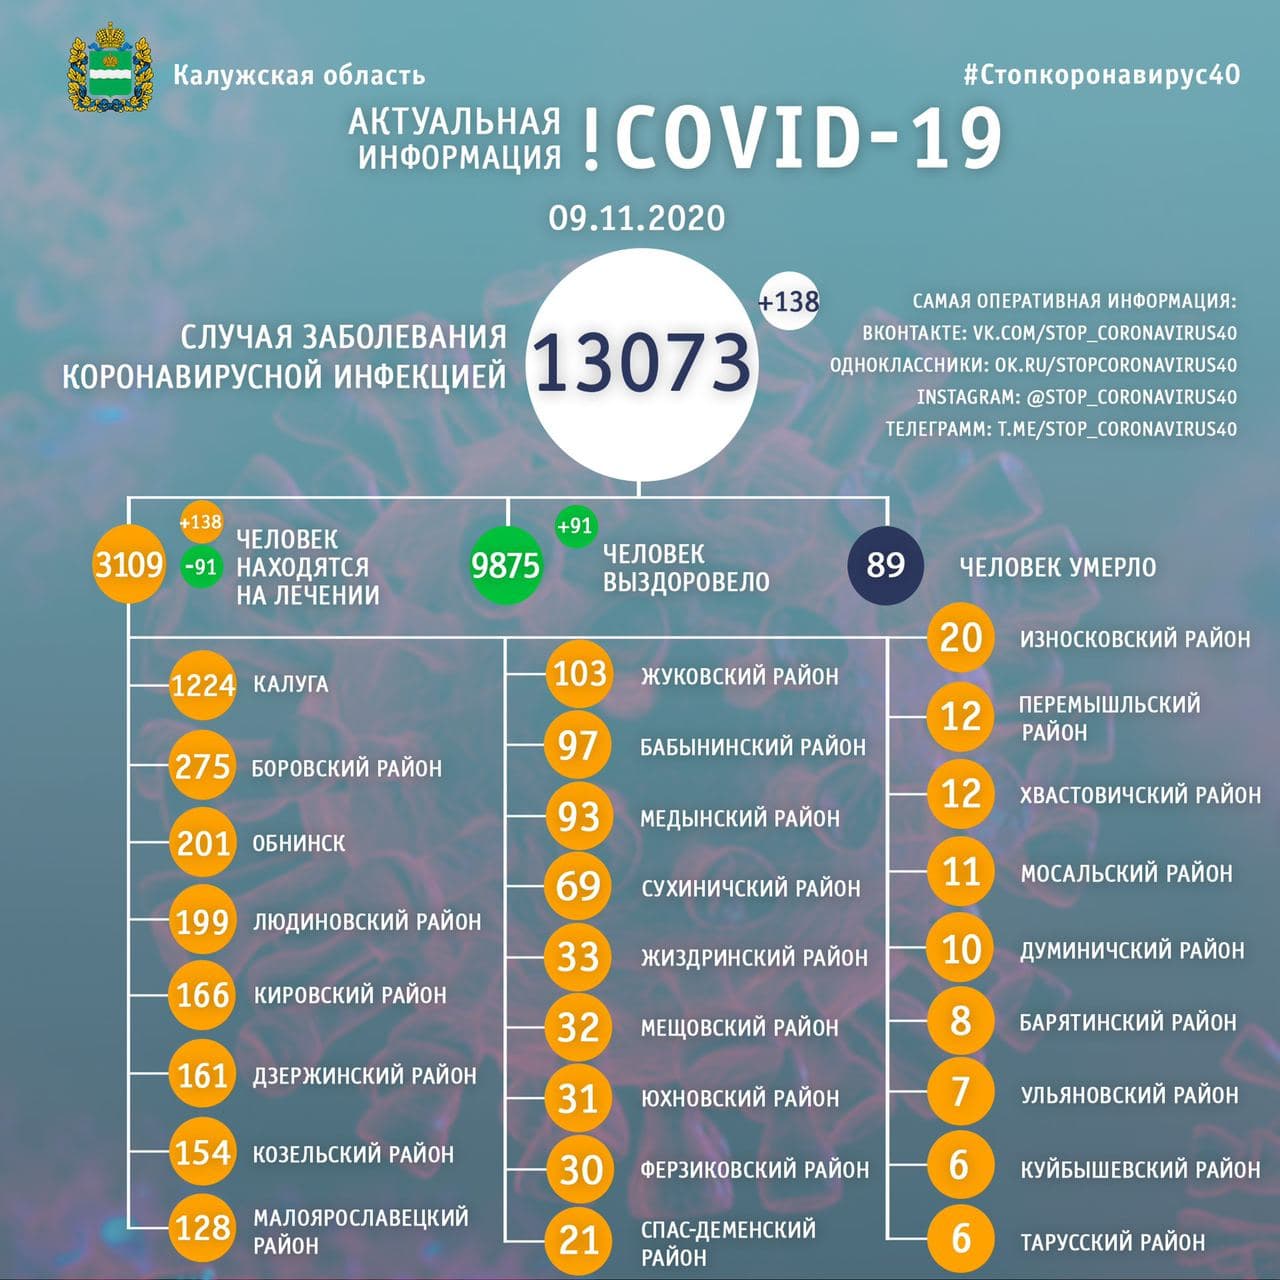 Официальная статистика по коронавирусу в Калужской области на 9 ноября 2020 года.